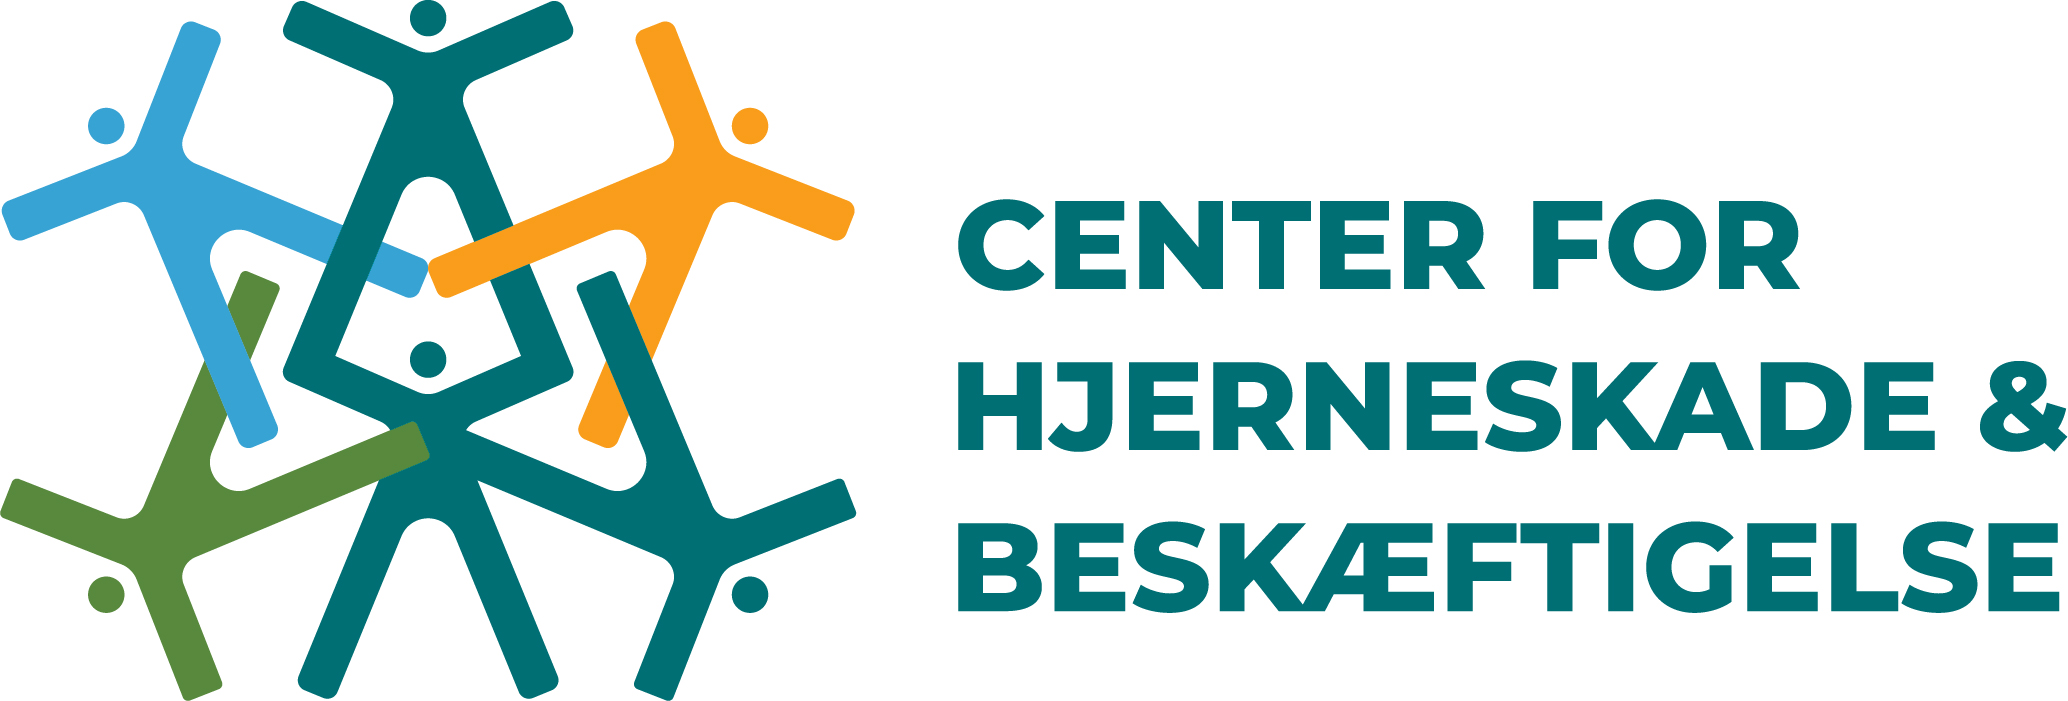 Logo for Center for hjerneskade og beskæftigelse.